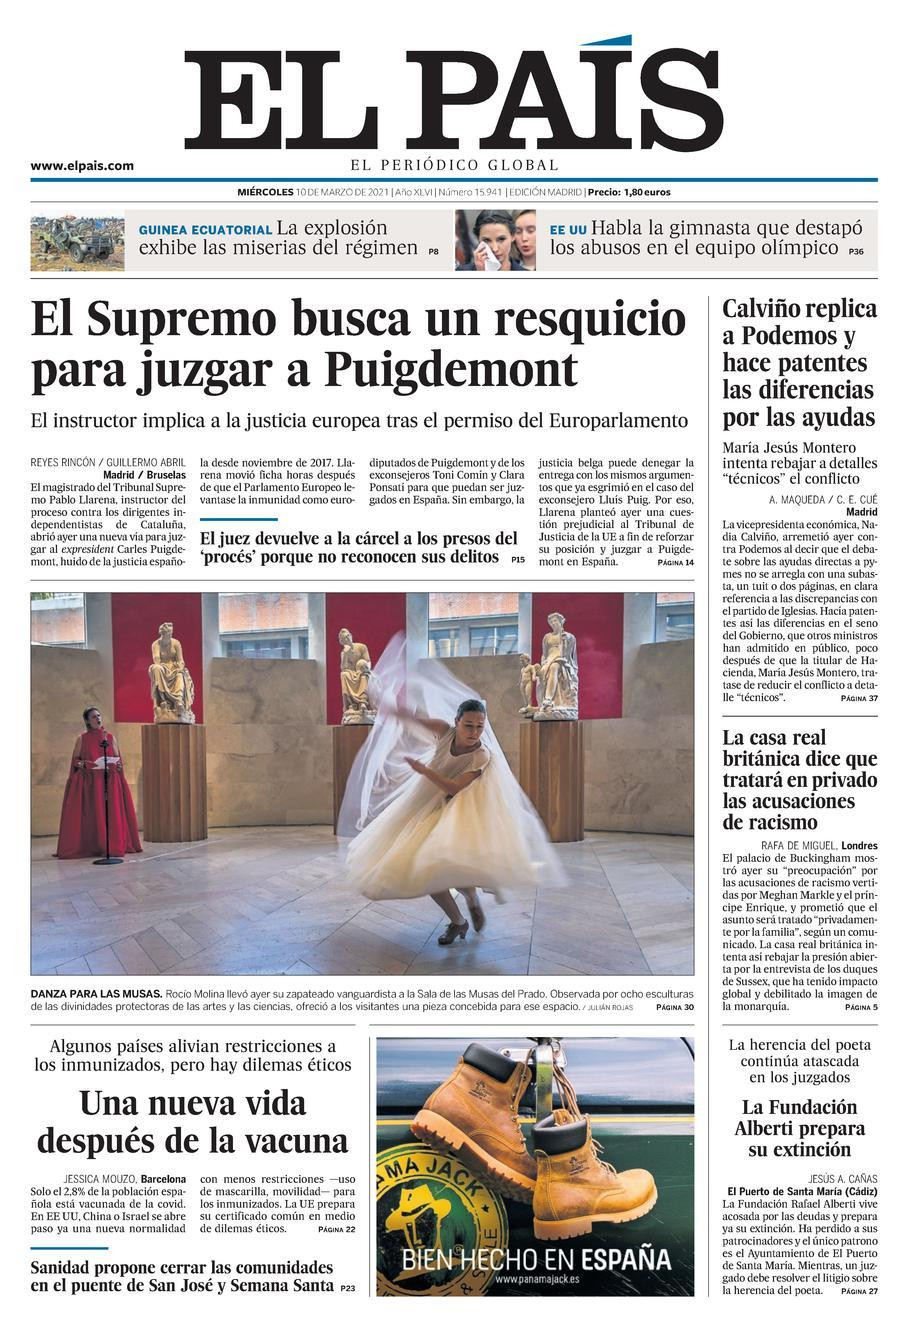 Portada del 10 de marzo de 2021 de 'El País' / KIOSKO.NET